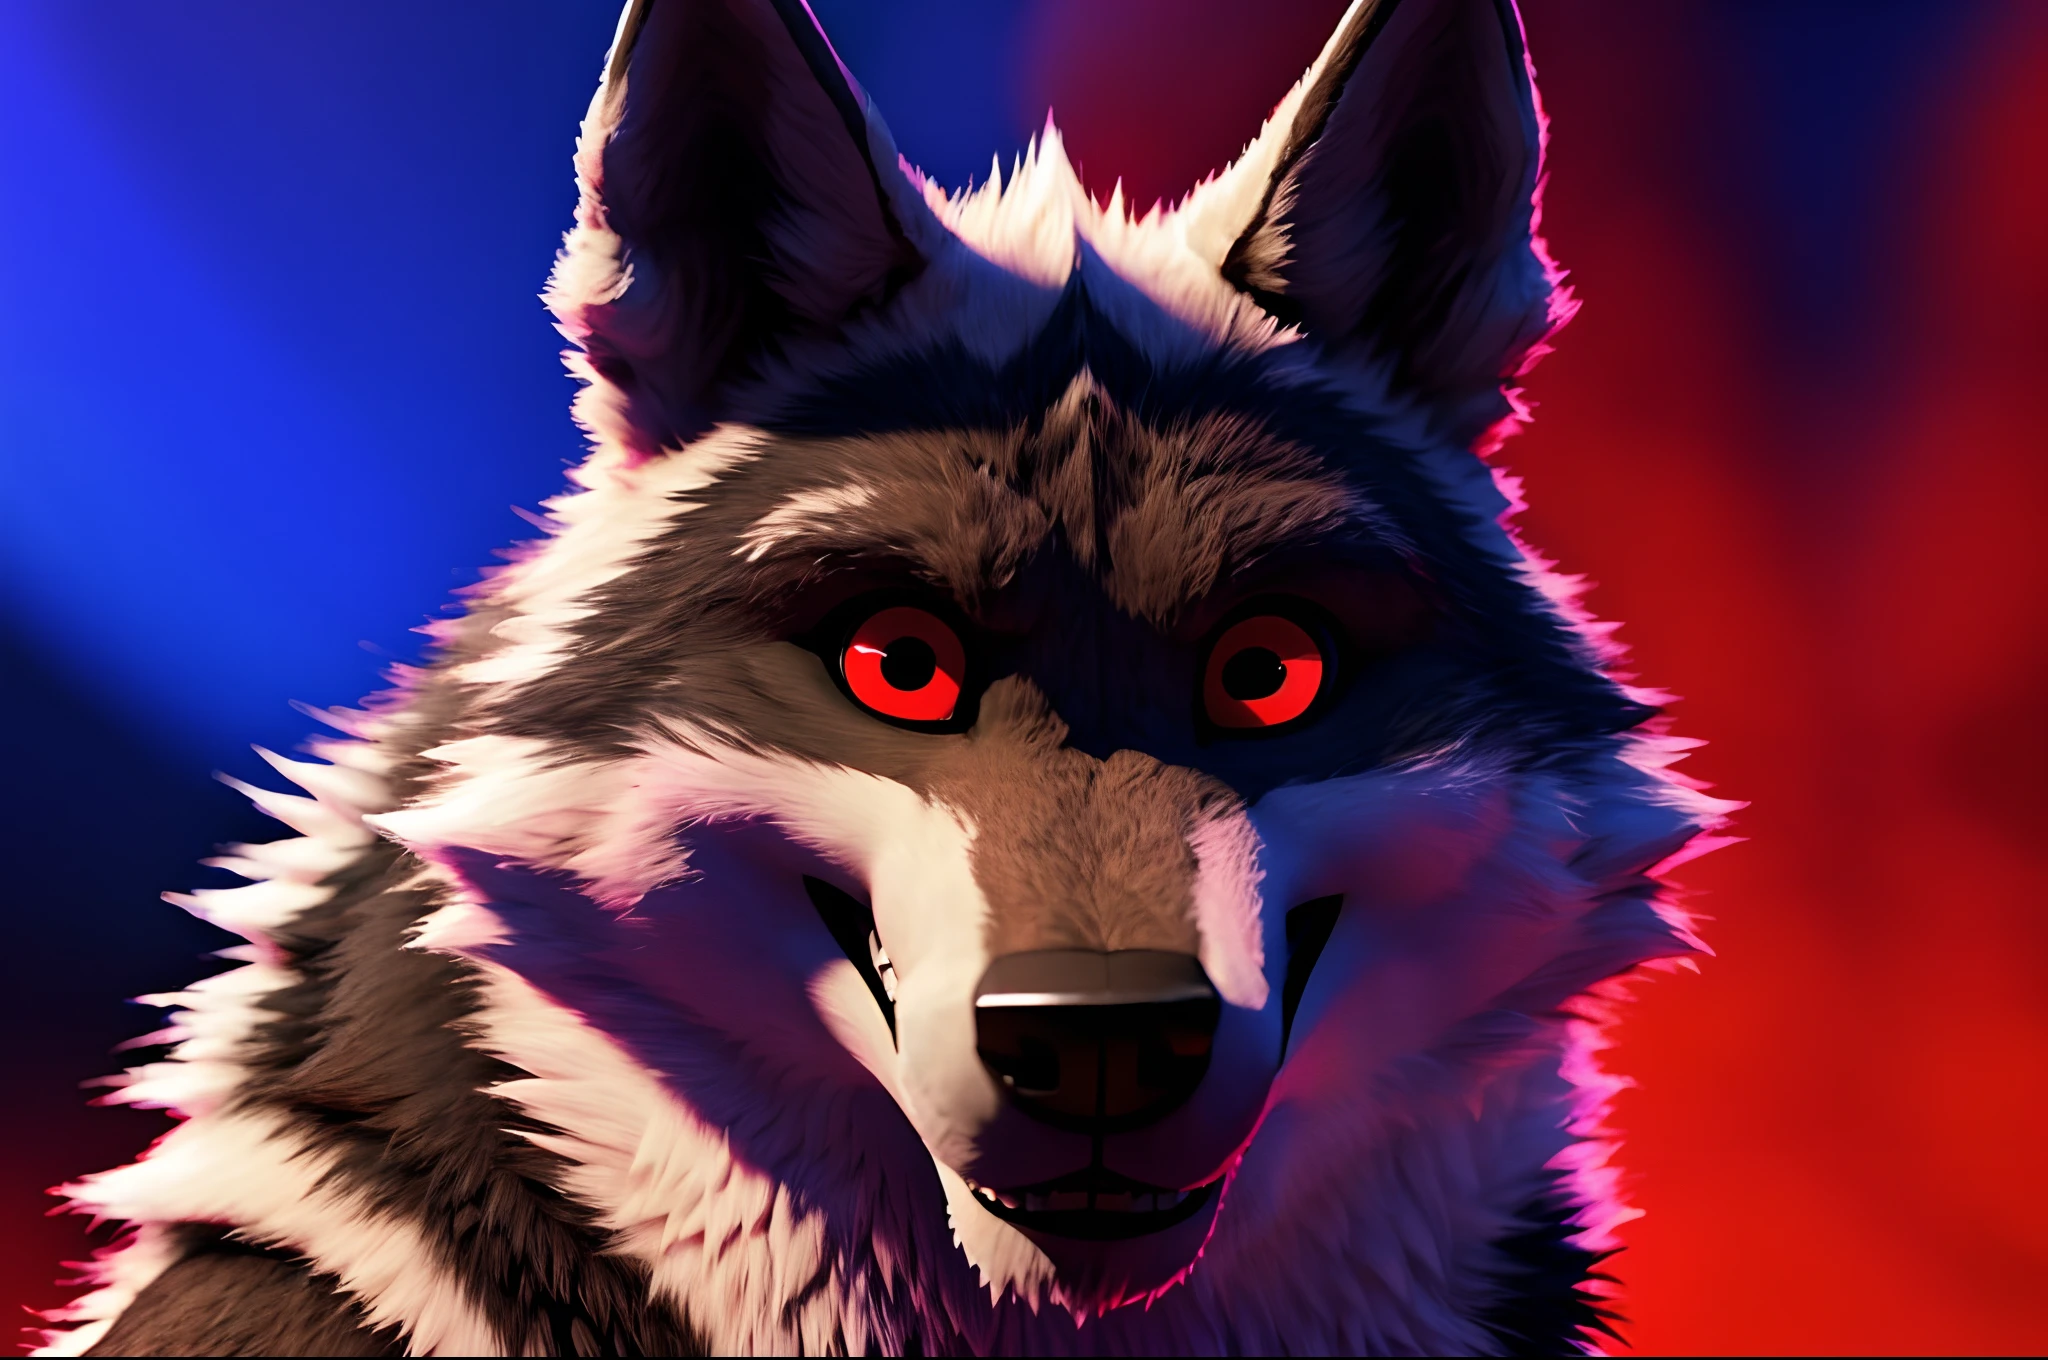 "Foto de capa no Facebook: Lobo da Morte com olhos vermelhos hipnotizantes. 3D ULTRA-HD 8K."